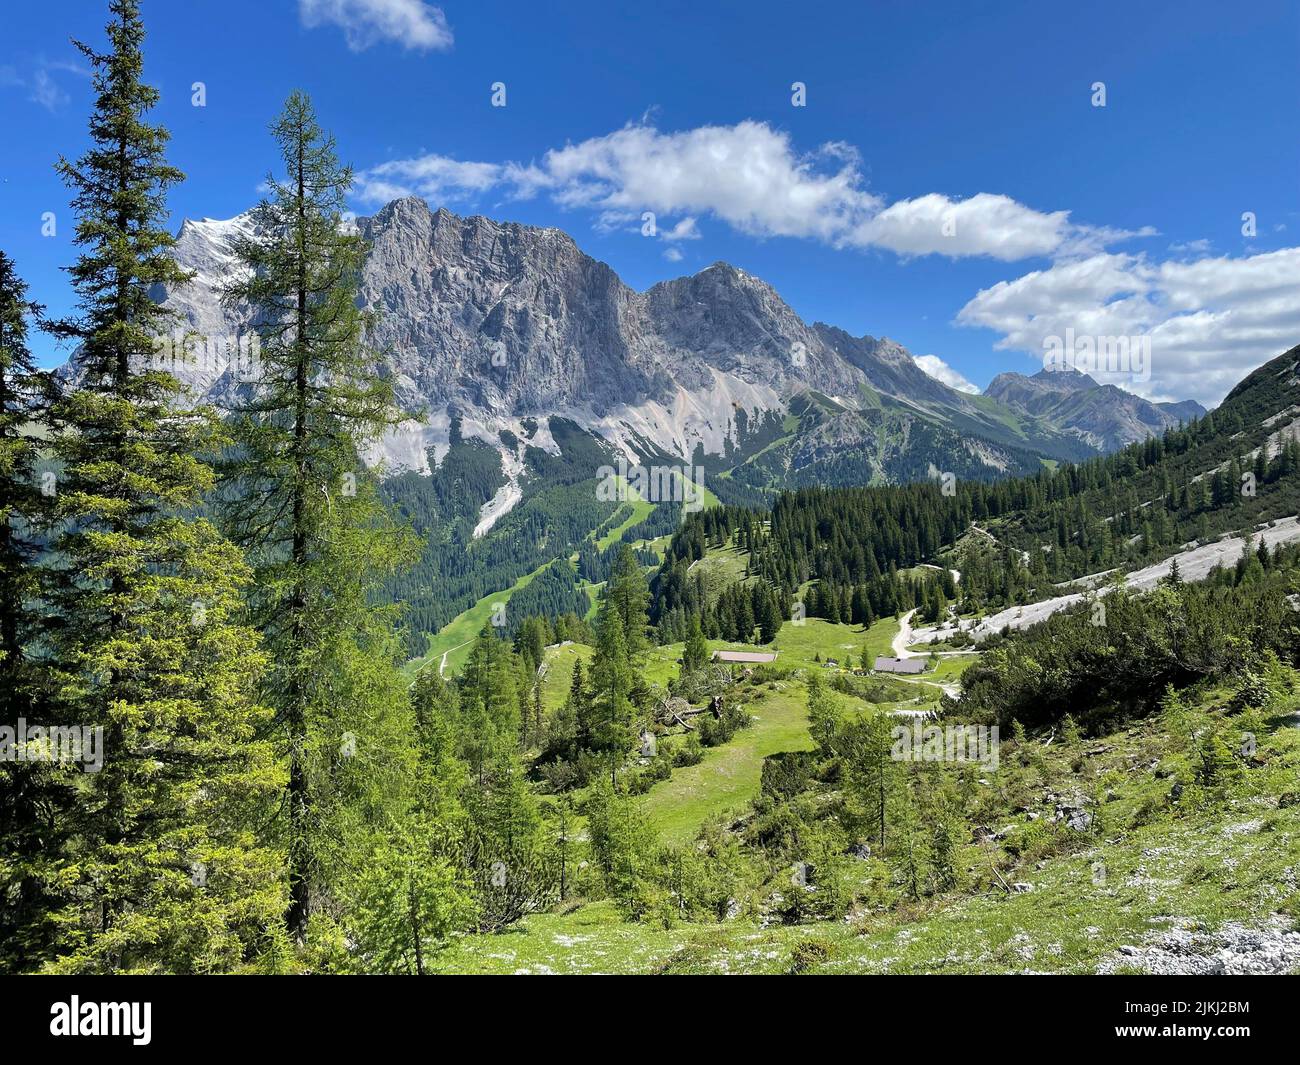 View of Zugspitzmassiv and Seebenalm, Gaistal, hiking, nature, mountains, blue sky, activity, Mieminger Kette, Leutasch, Seefeld, Mösern, Reith, Scharnitz, Tirols Hochplateau, Tirol, Austria Stock Photo